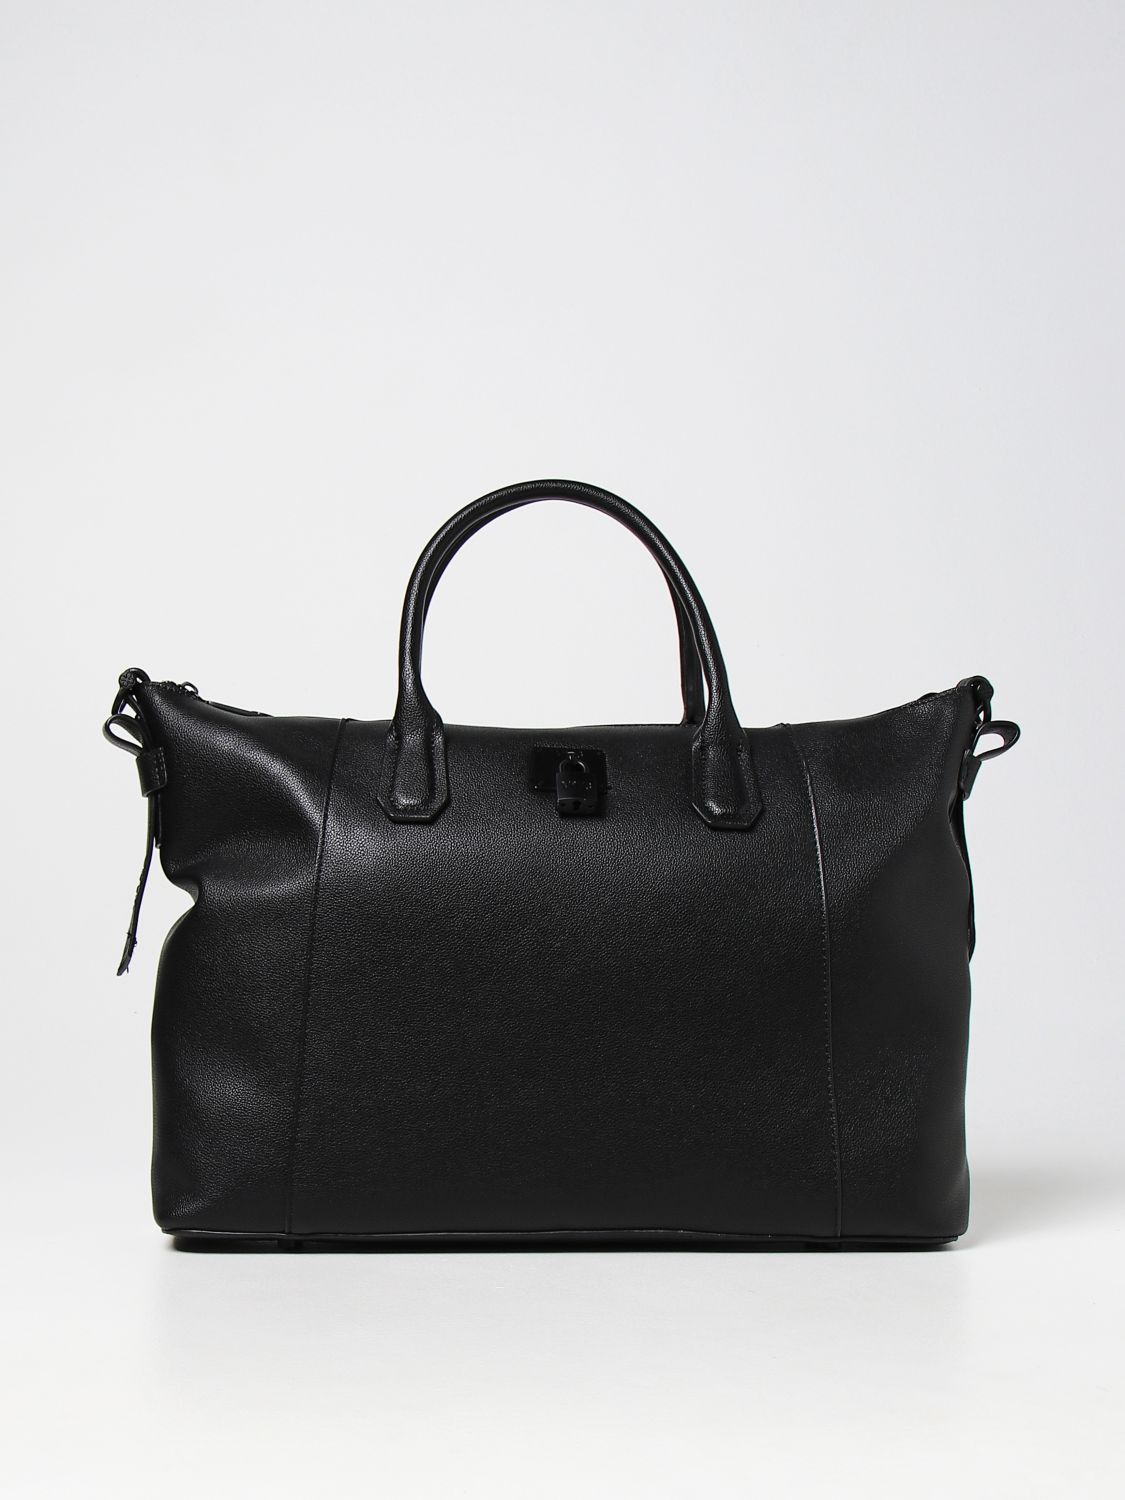 V73: Mariel Bis V ° 73 bag in synthetic leather - Black | V73 tote bags ...